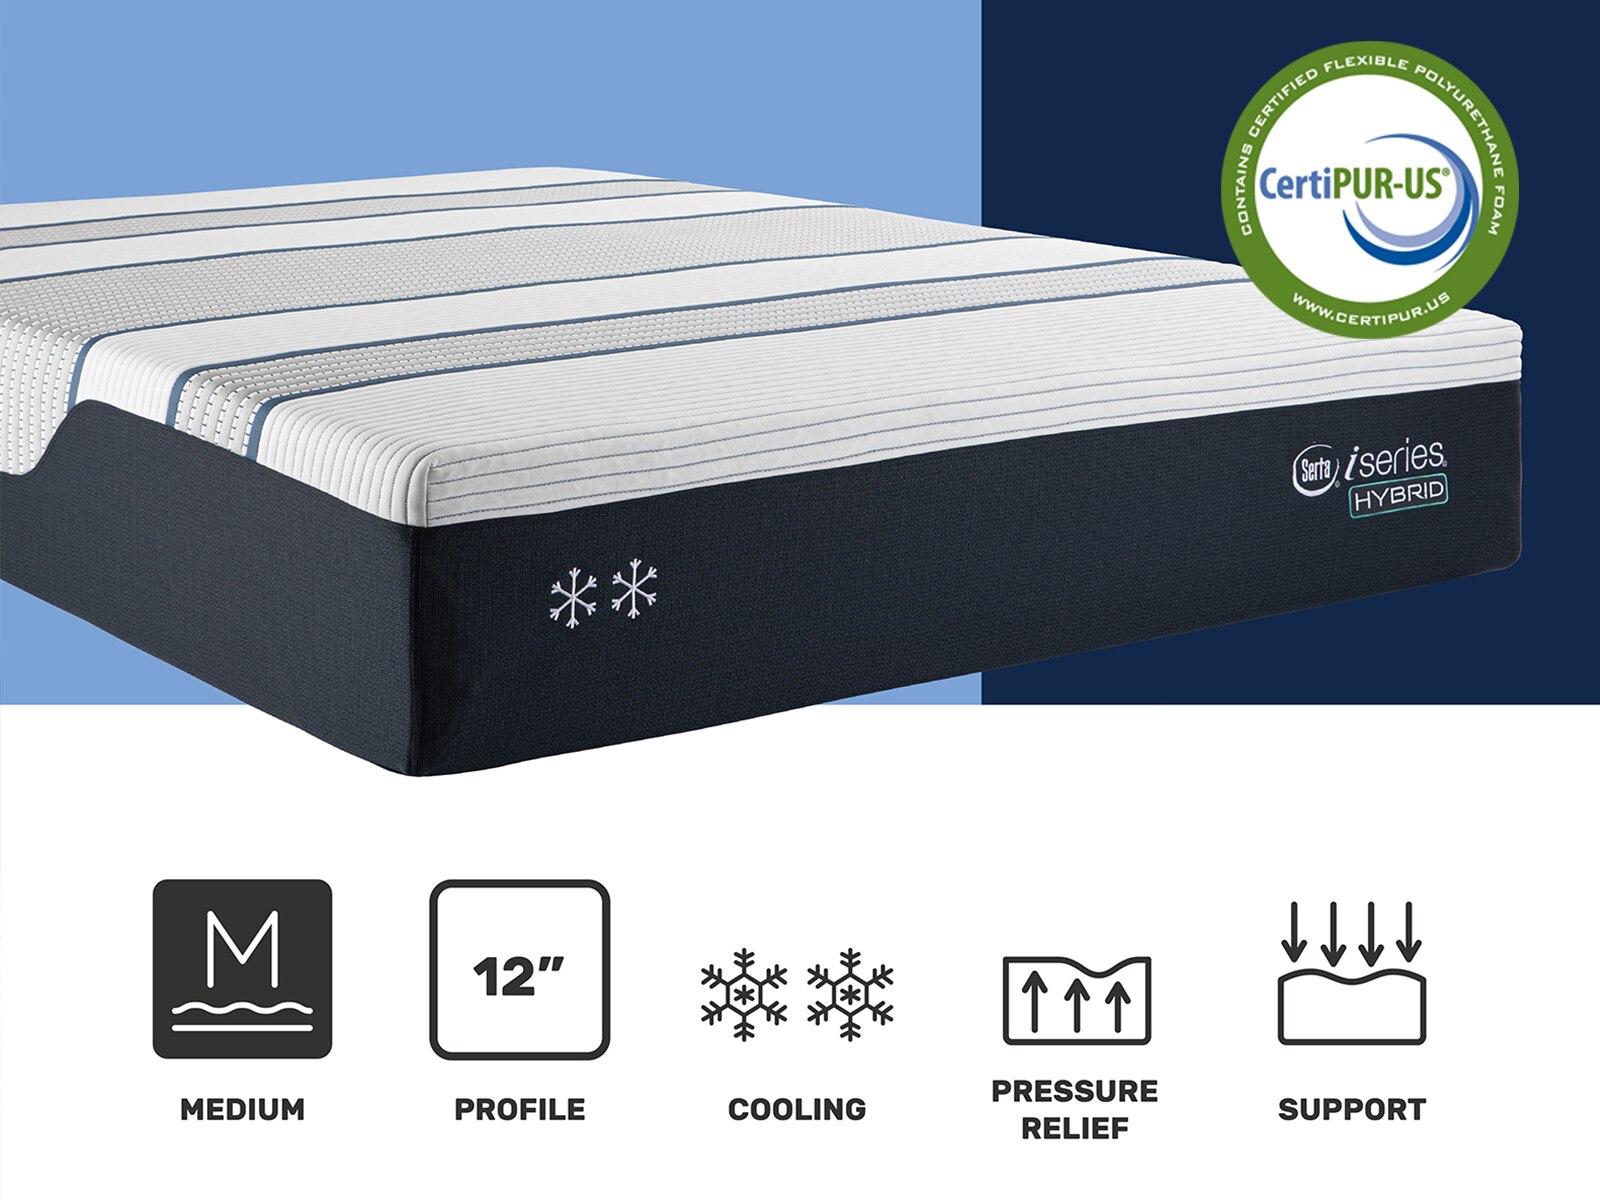 iseries hybrid 500 14 cushion firm mattress